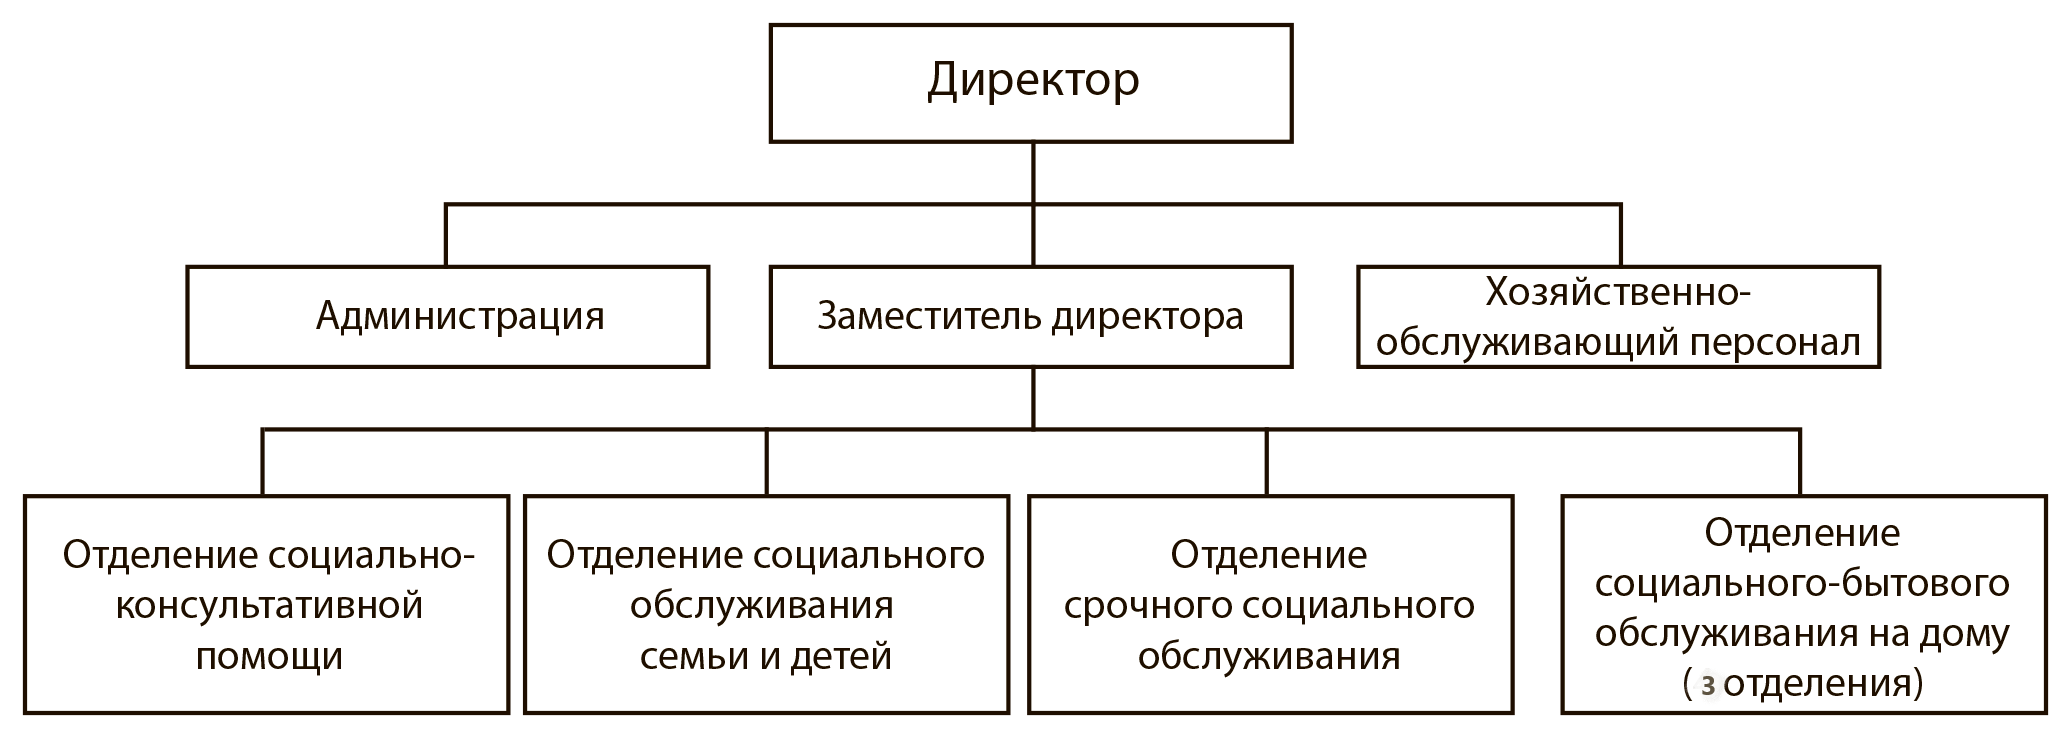 Структура ГБУ «Комплексный центр социального обслуживания населения городского округа город Первомайск»